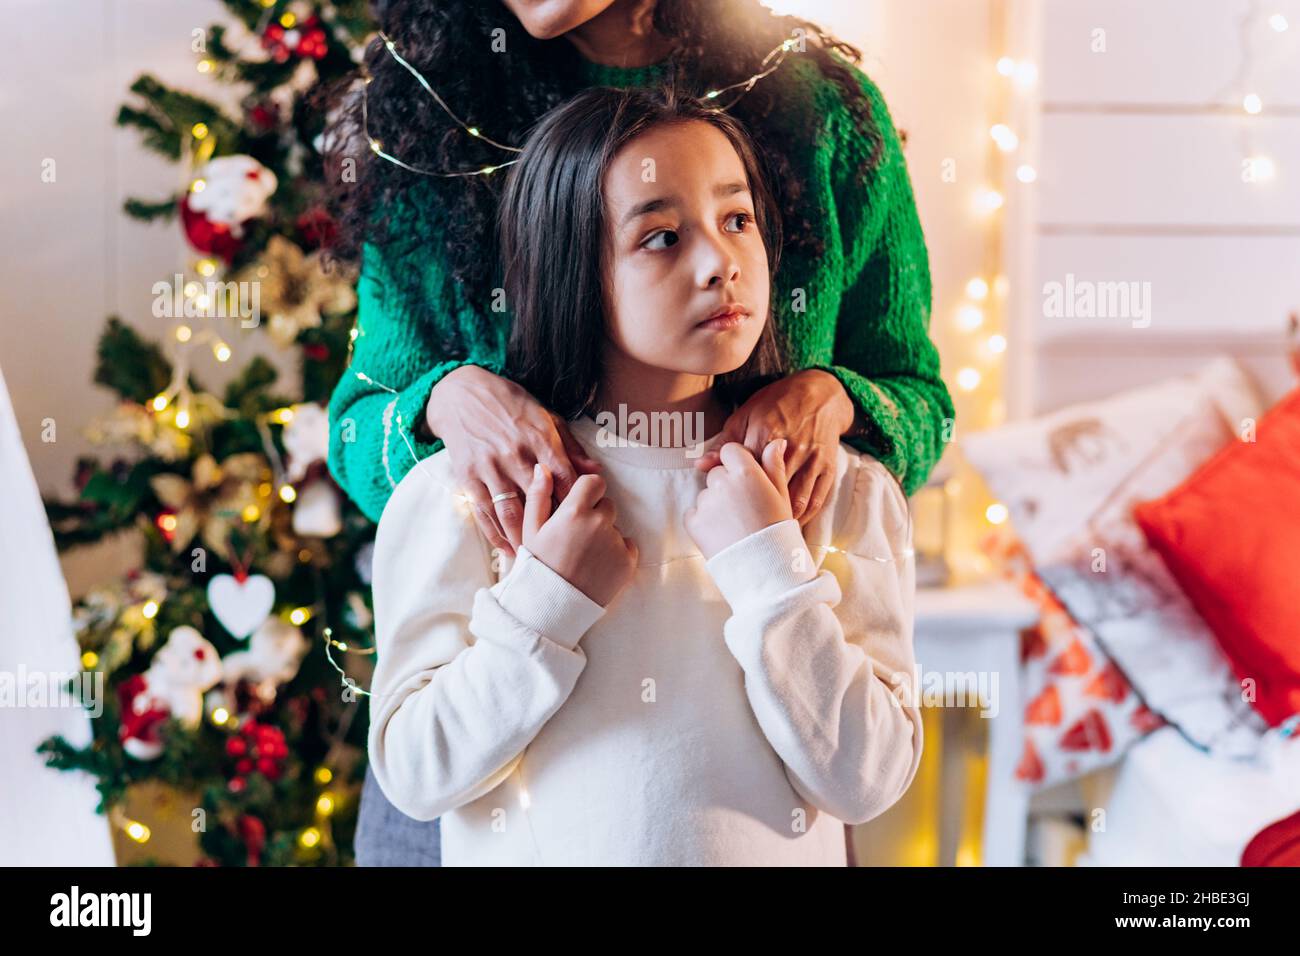 Ritratto di una bambina e sua madre in piedi dietro di lei in un maglione  verde, mettendo le mani sulle sue spalle sullo sfondo di un albero di Natale  con una ghirlanda,